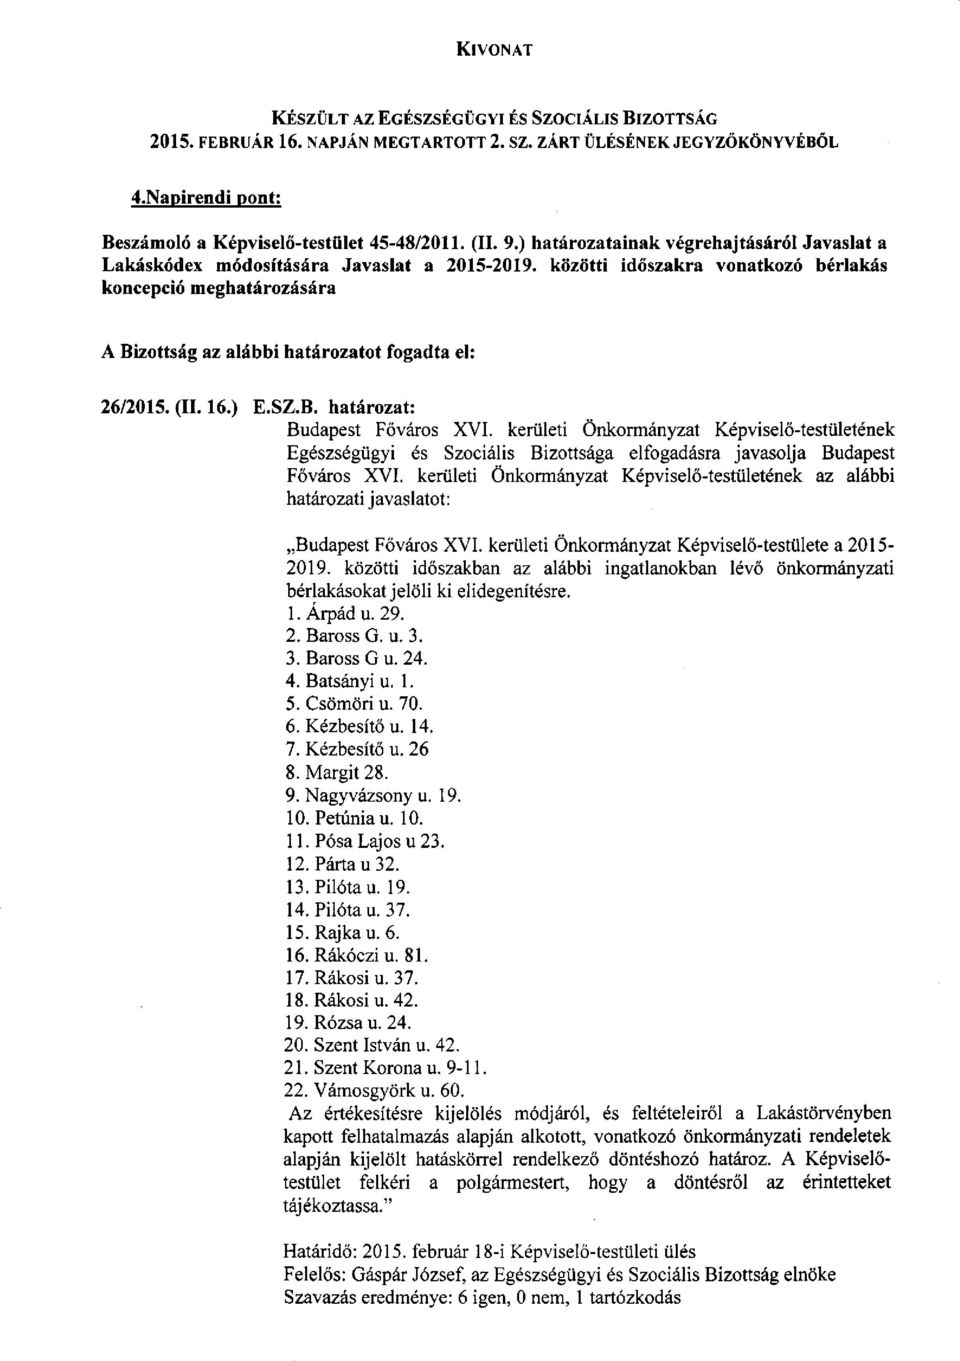 kerületi Önkormányzat Képviselő-testületének az alábbi határozati javaslatot: Budapest Főváros XVI. kerületi Önkormányzat Képviselő-testülete a 2015-2019.